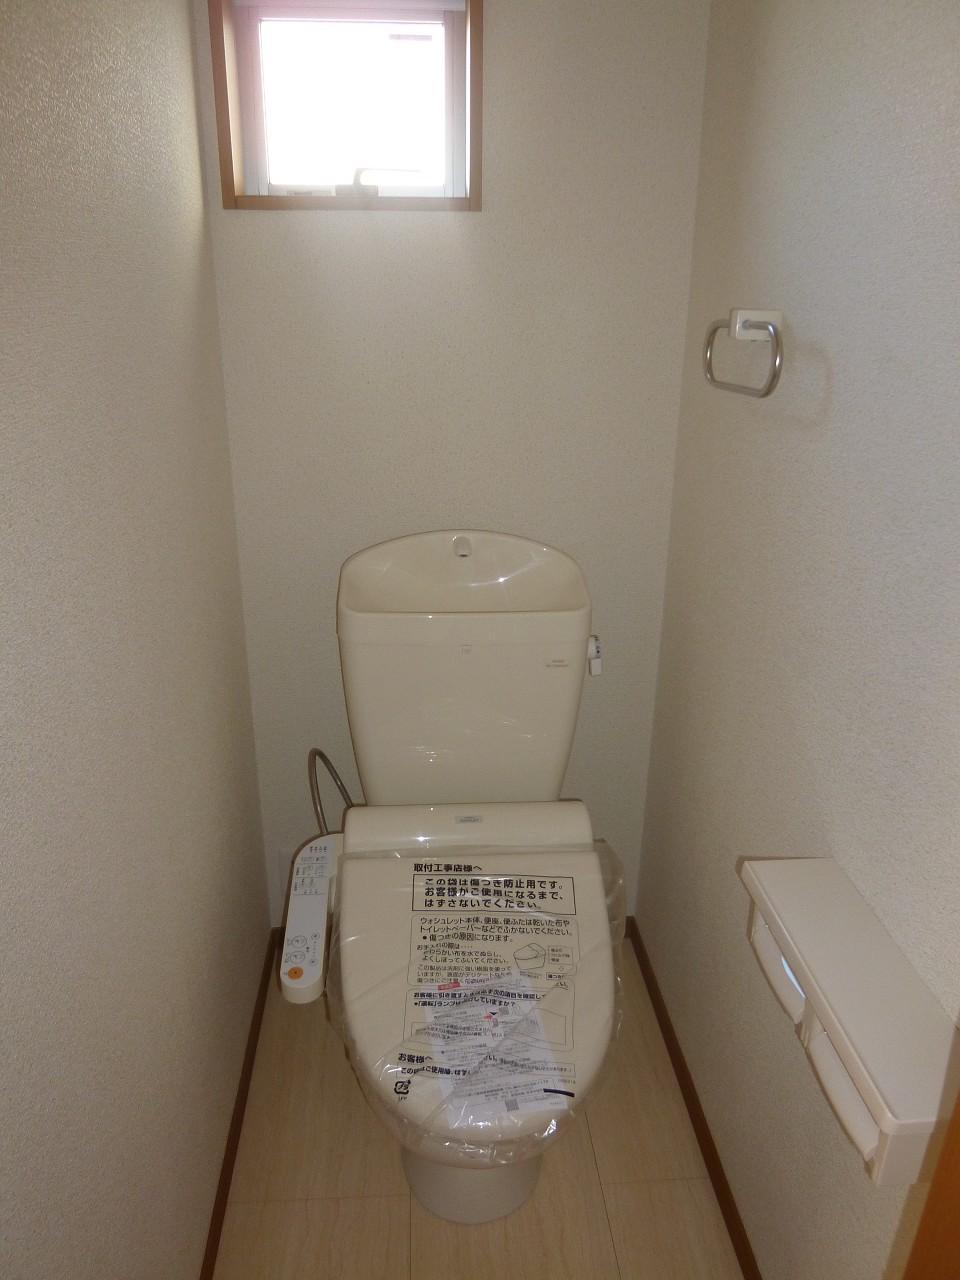 Toilet.  ◆ With Washlet ◆ 